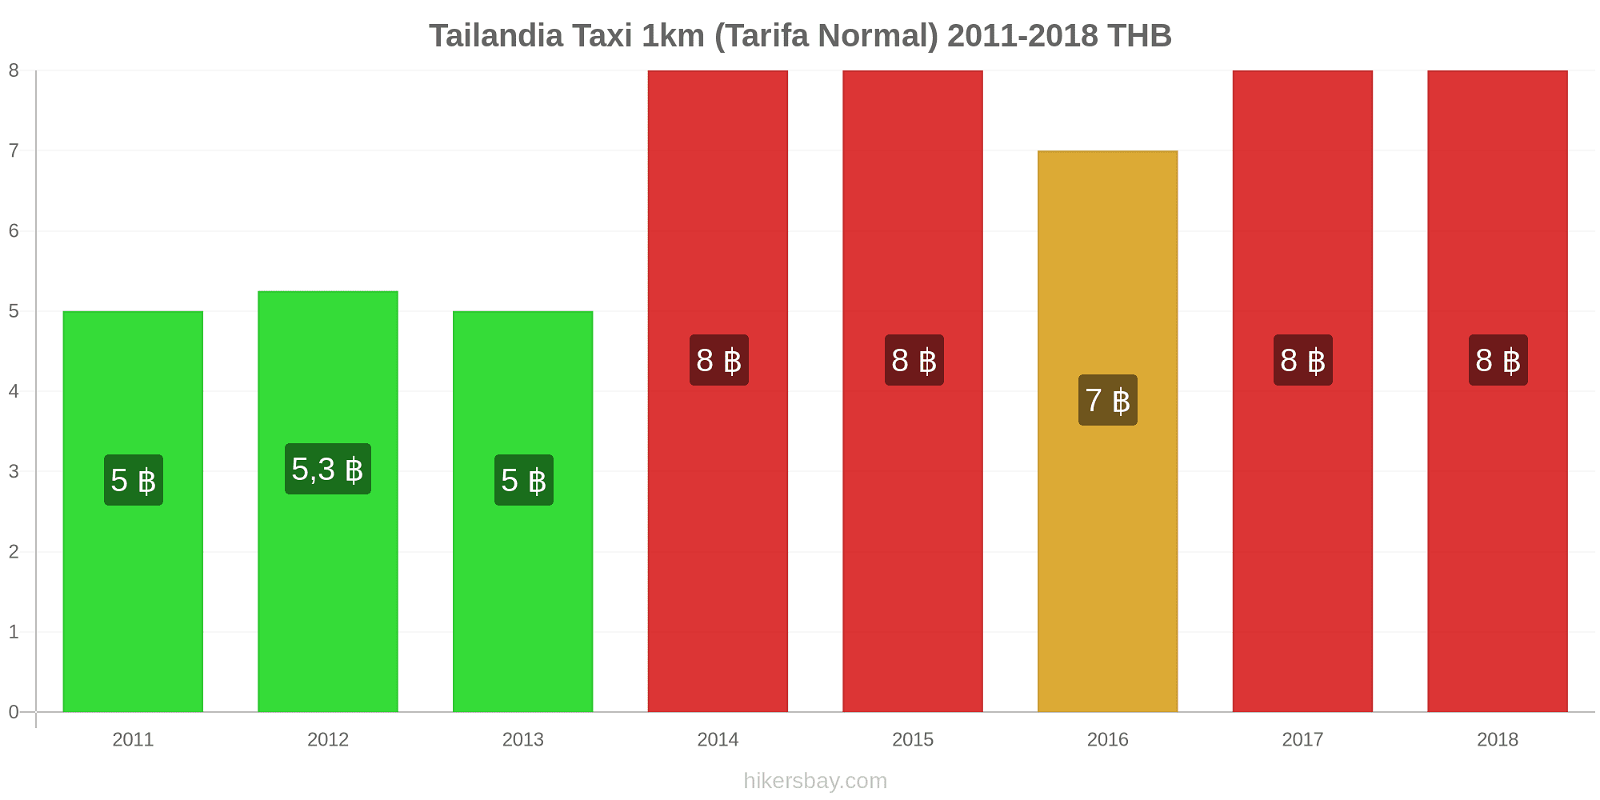 Tailandia cambios de precios Taxi 1km (tarifa normal) hikersbay.com